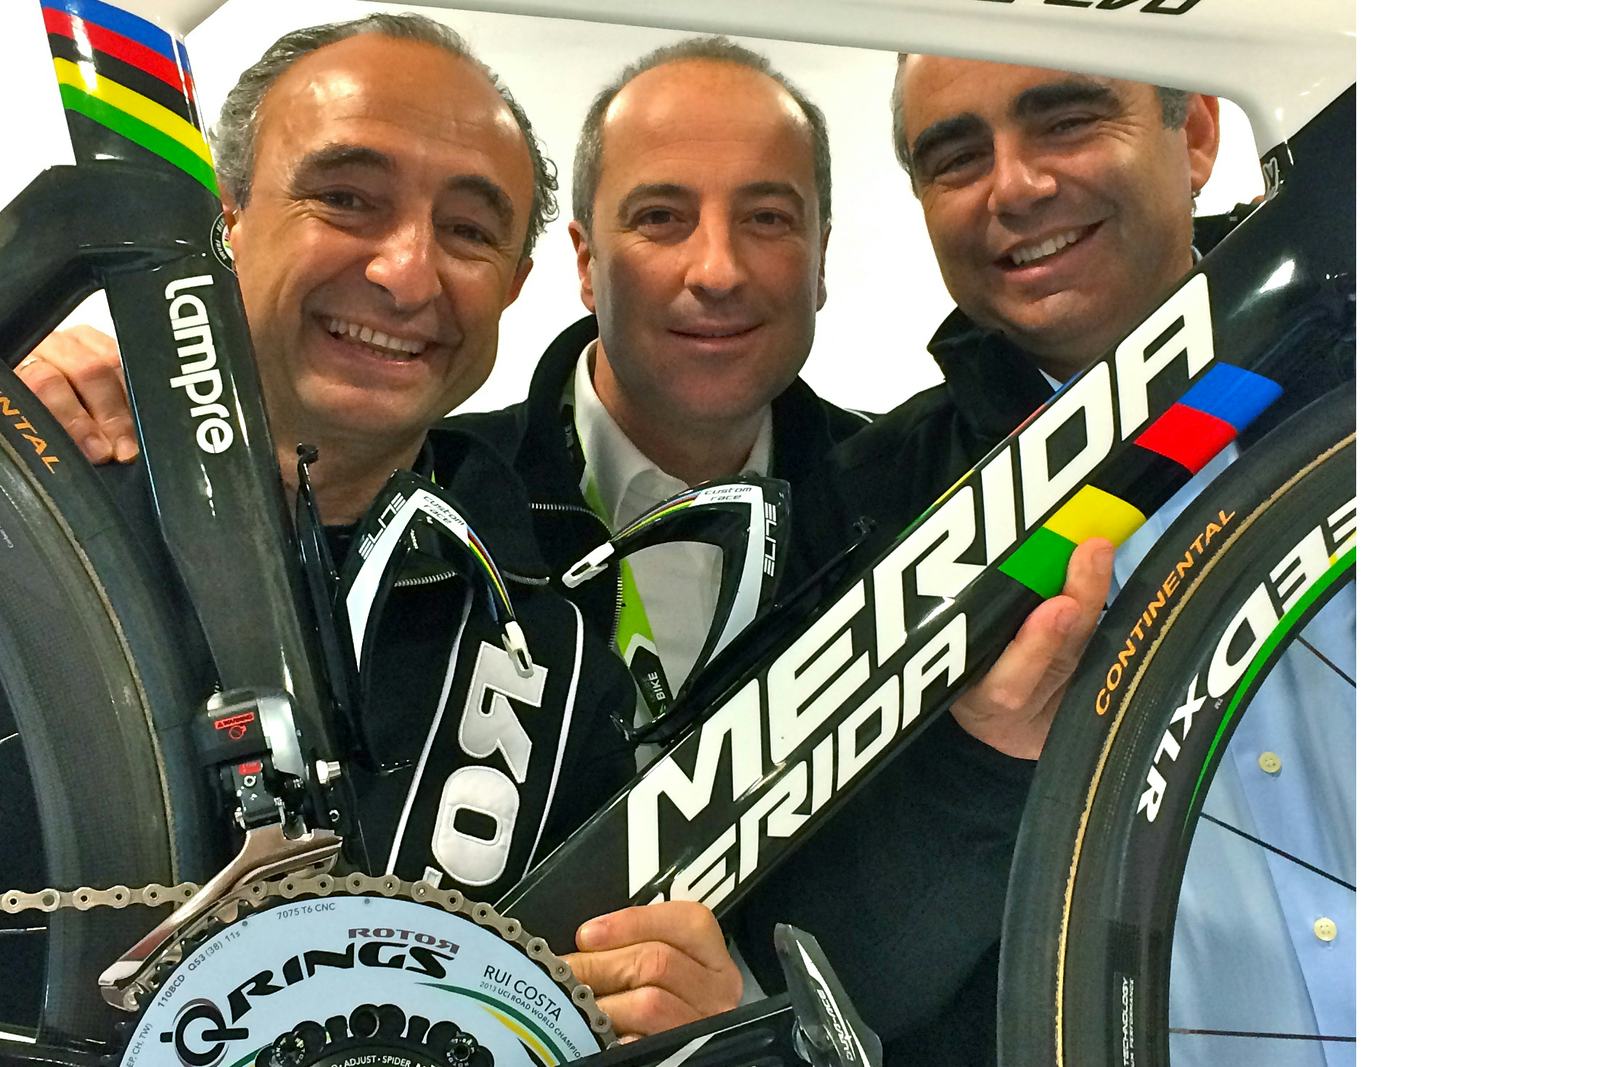 來自Rotor的Ignacio Estellés、Pablo Carrasco和José Manuel Banqueri (由左到右)歡迎他們新的投資者ProA Capital- Photo Rotor